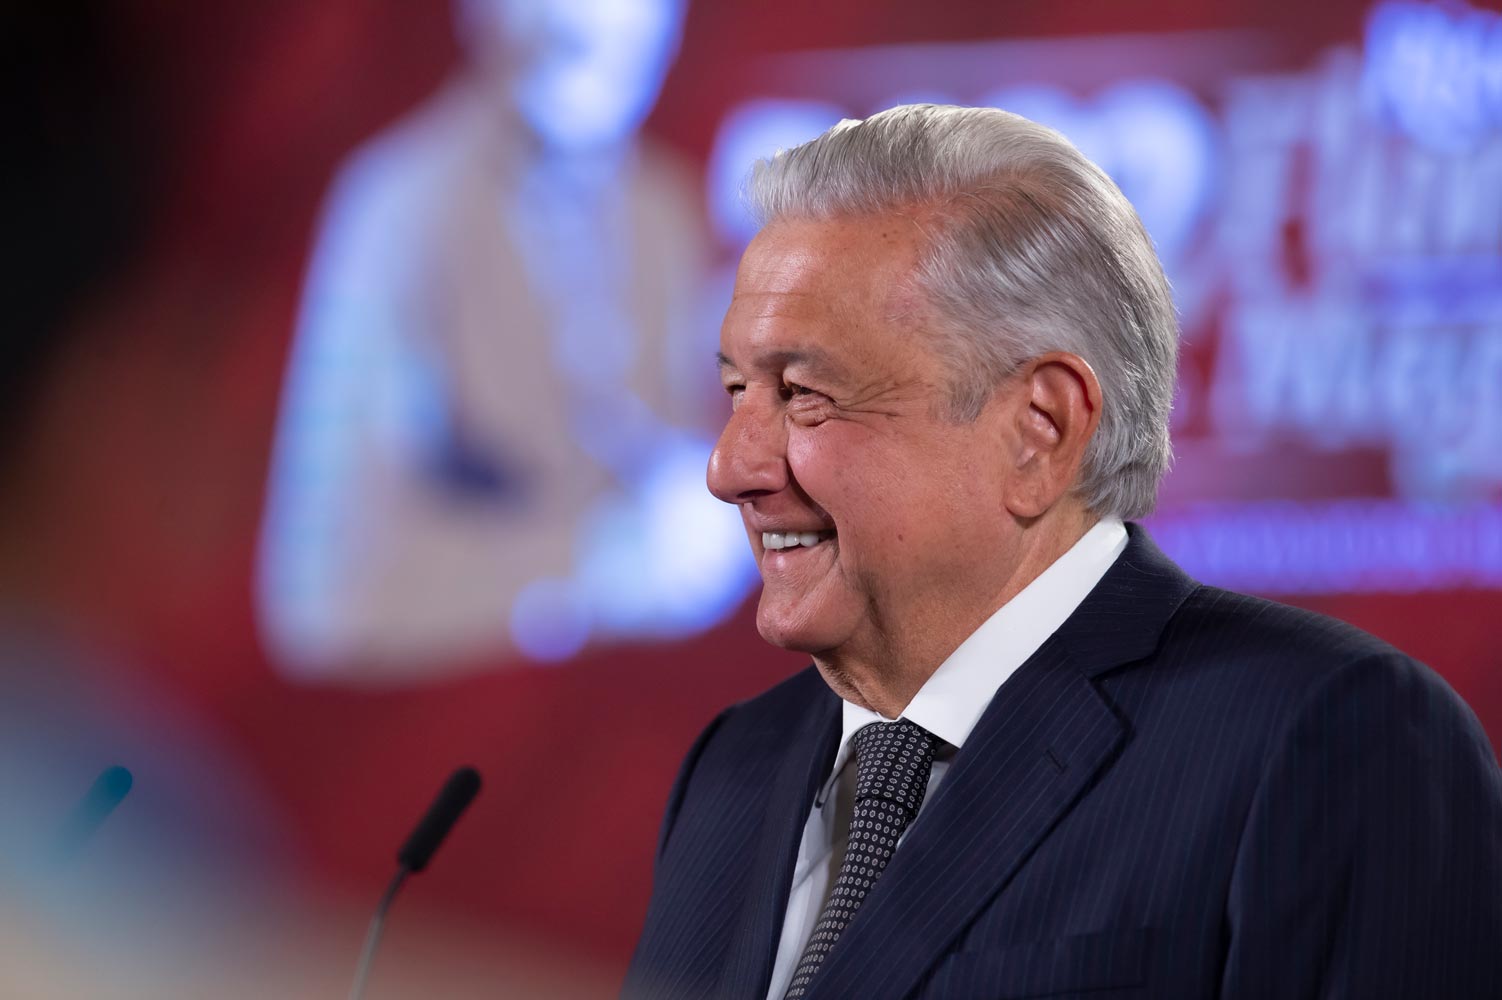 El presidente López Obrador no ha hecho ningún comentario sobre las afirmaciones de Donald Trump | Foto: Presidencia